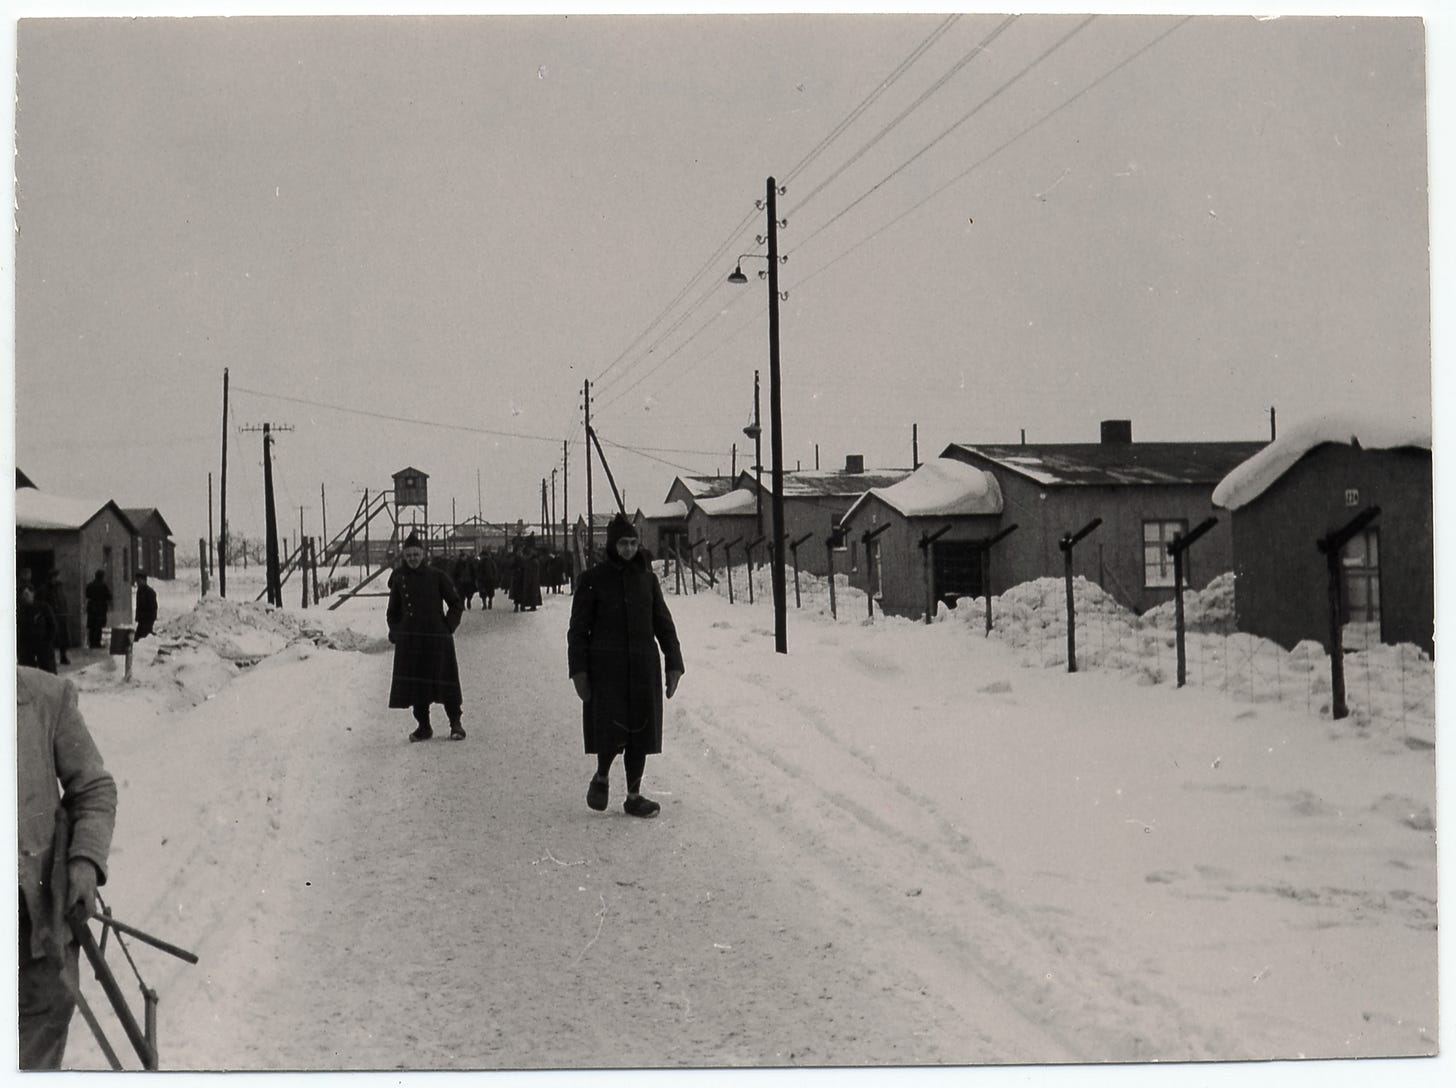 men walking in snowy terrain along a road